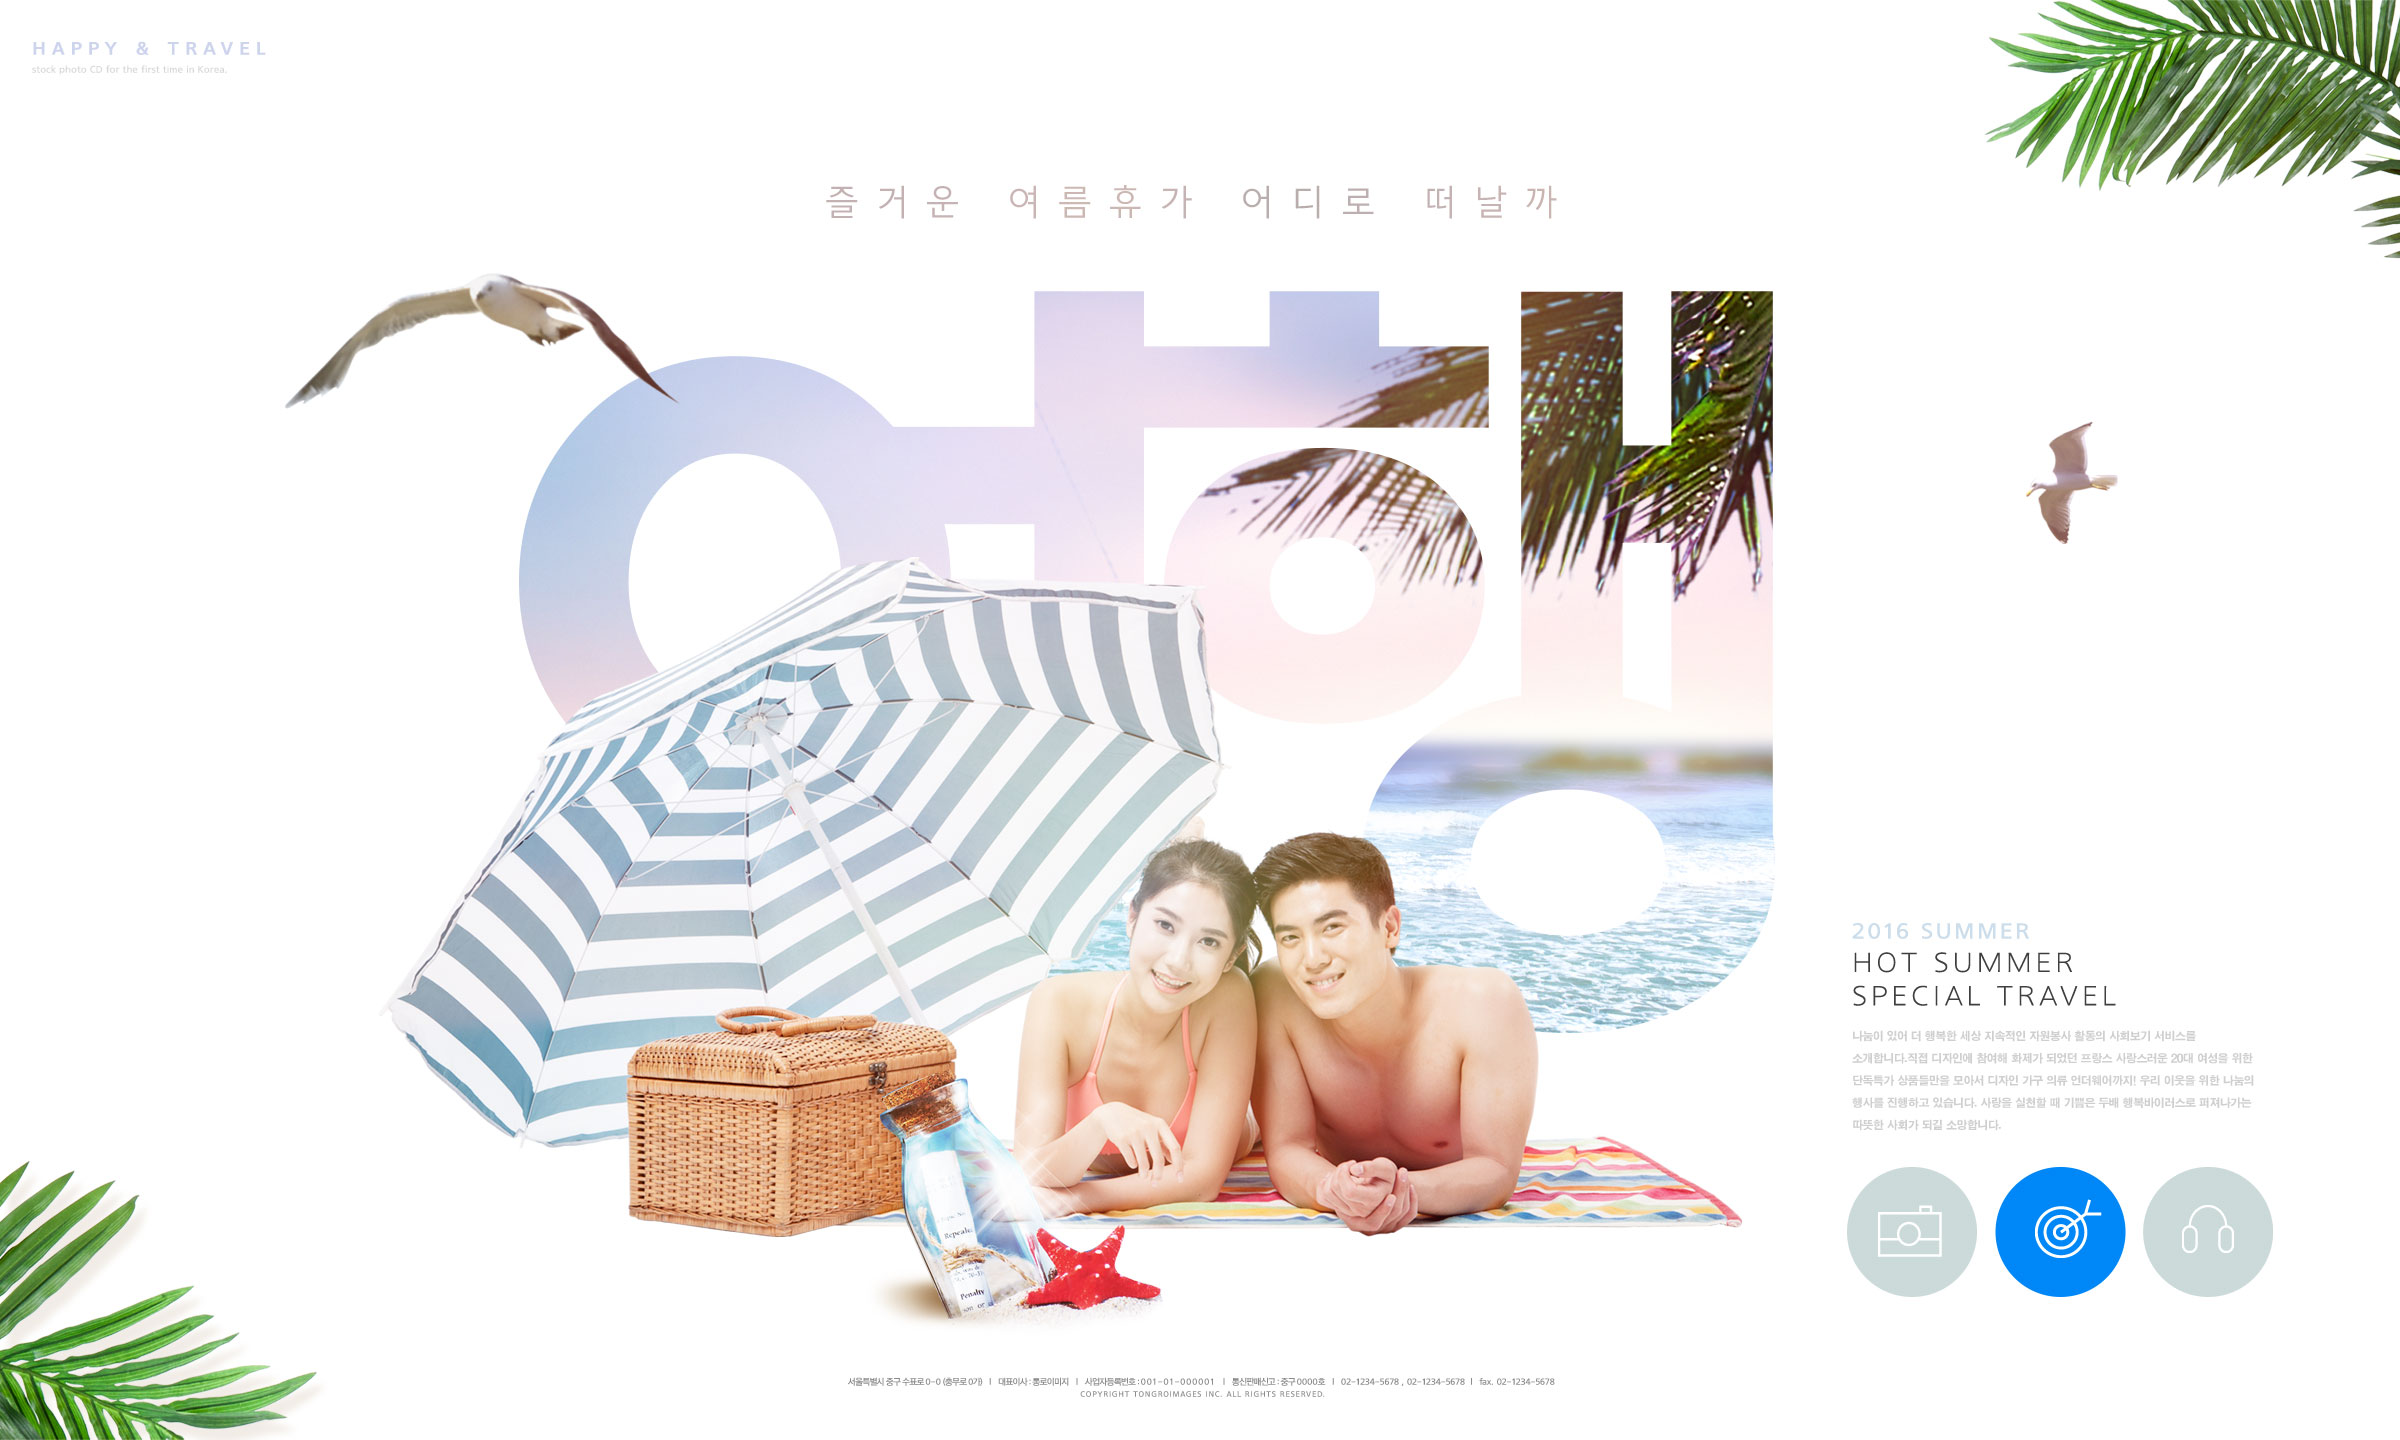 夏季假期沙滩旅行活动广告宣传海报模板插图